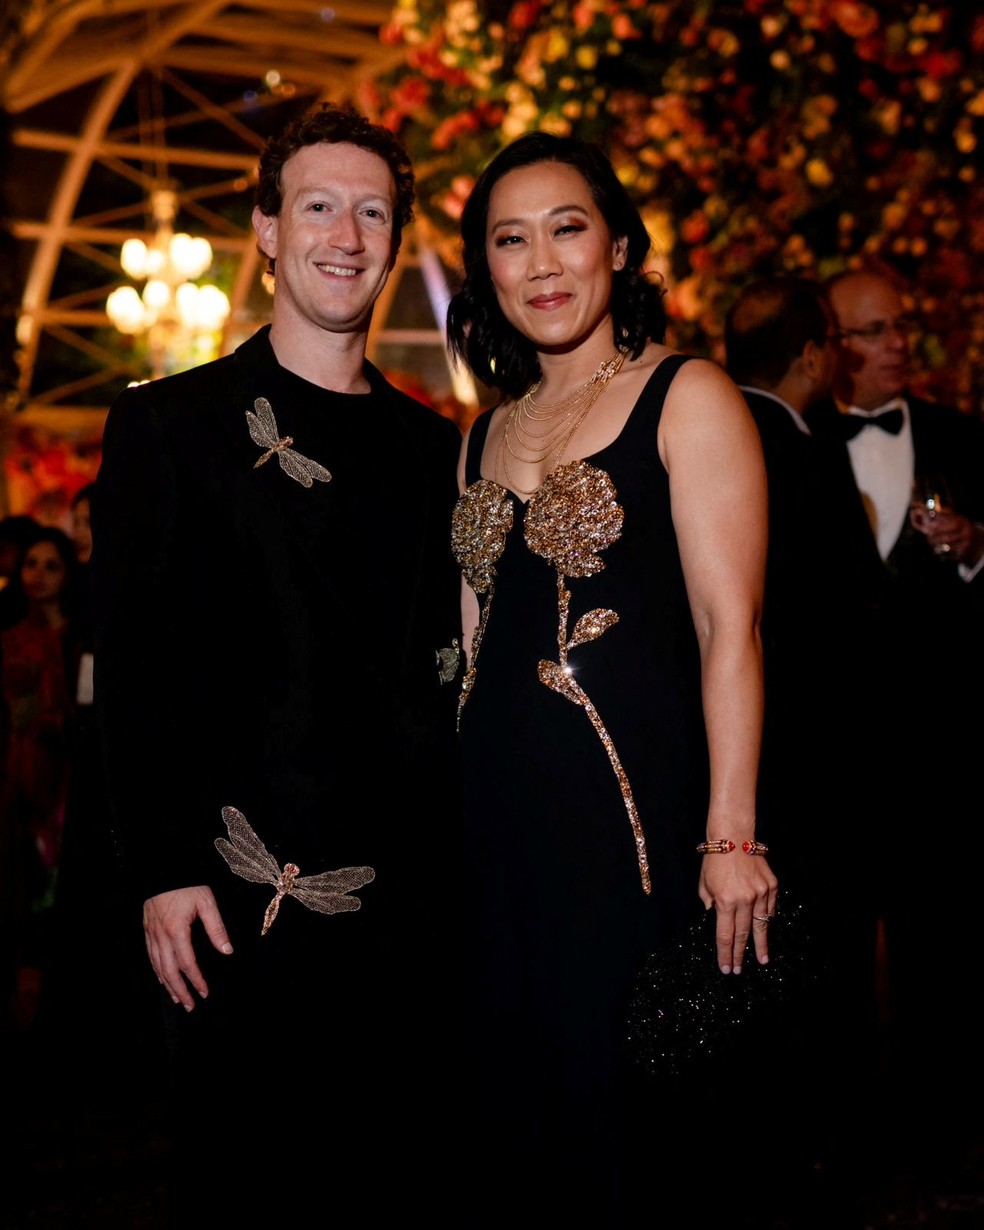 Mark Zuckerberg e sua esposa, Priscilla Chan, posam durante as celebrações pré-casamento de Anant Ambani e Radhika Merchan — Foto: Reliance Industries/Handout via REUTERS